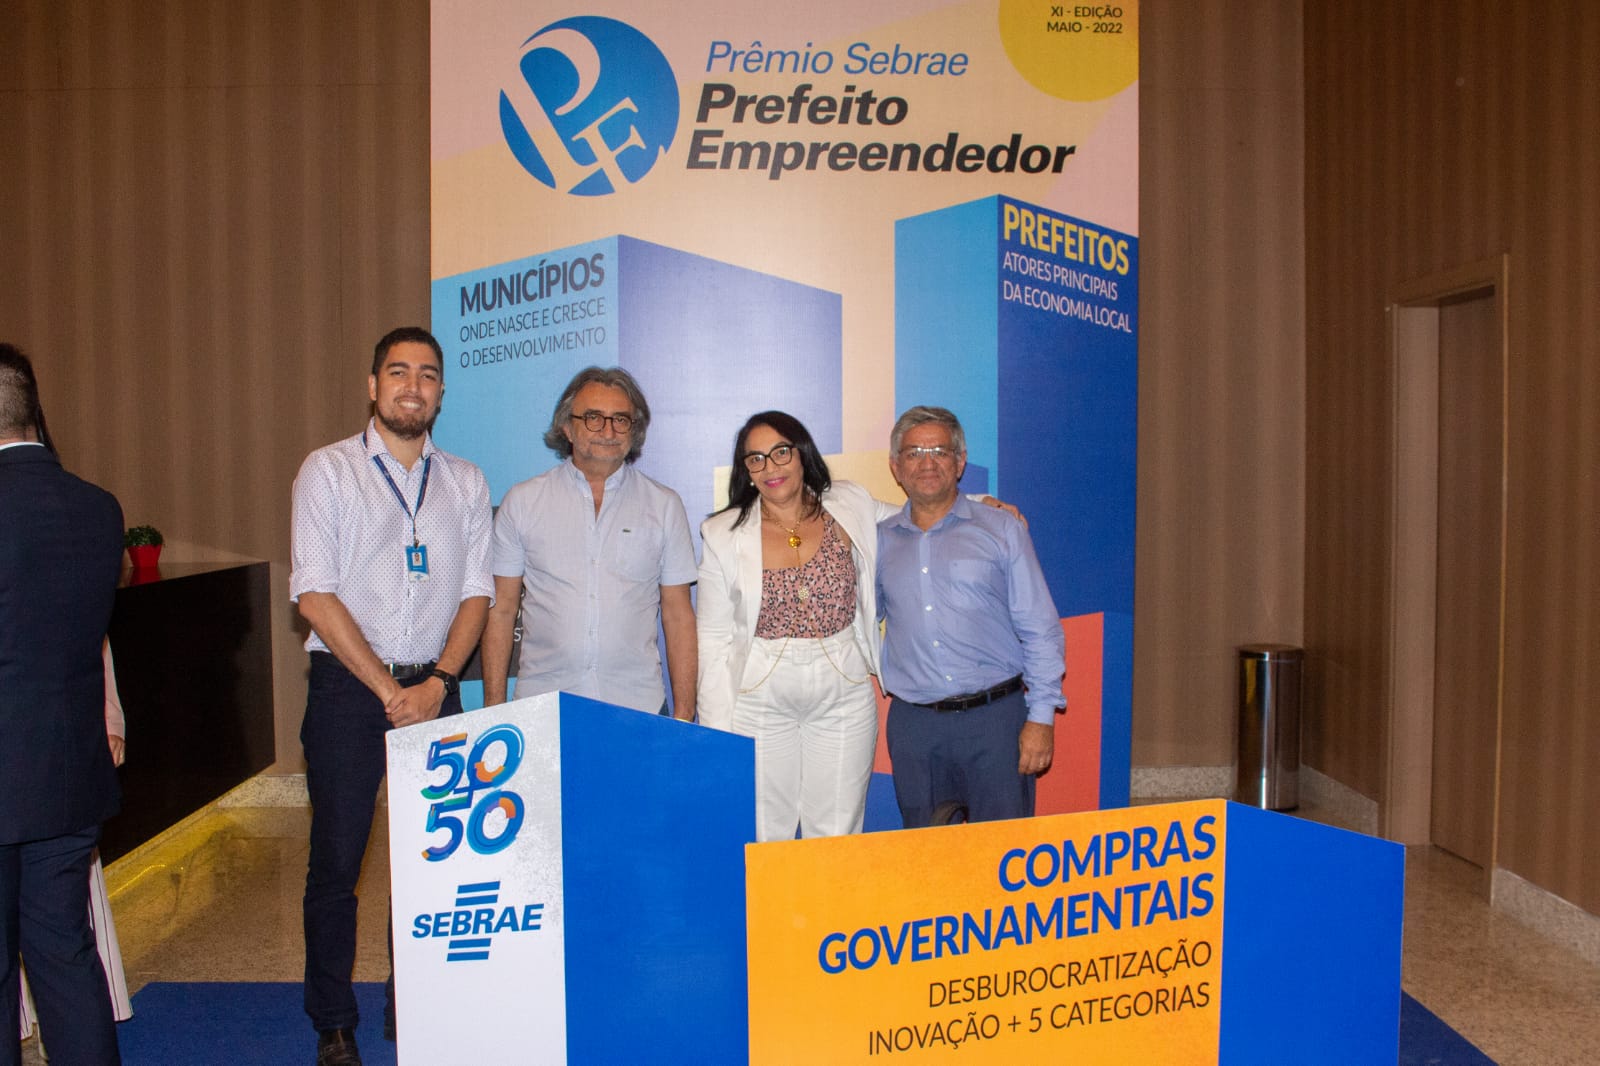 Eusébio é premiado com segundo lugar no Prêmio Sebrae Prefeito Empreendedor